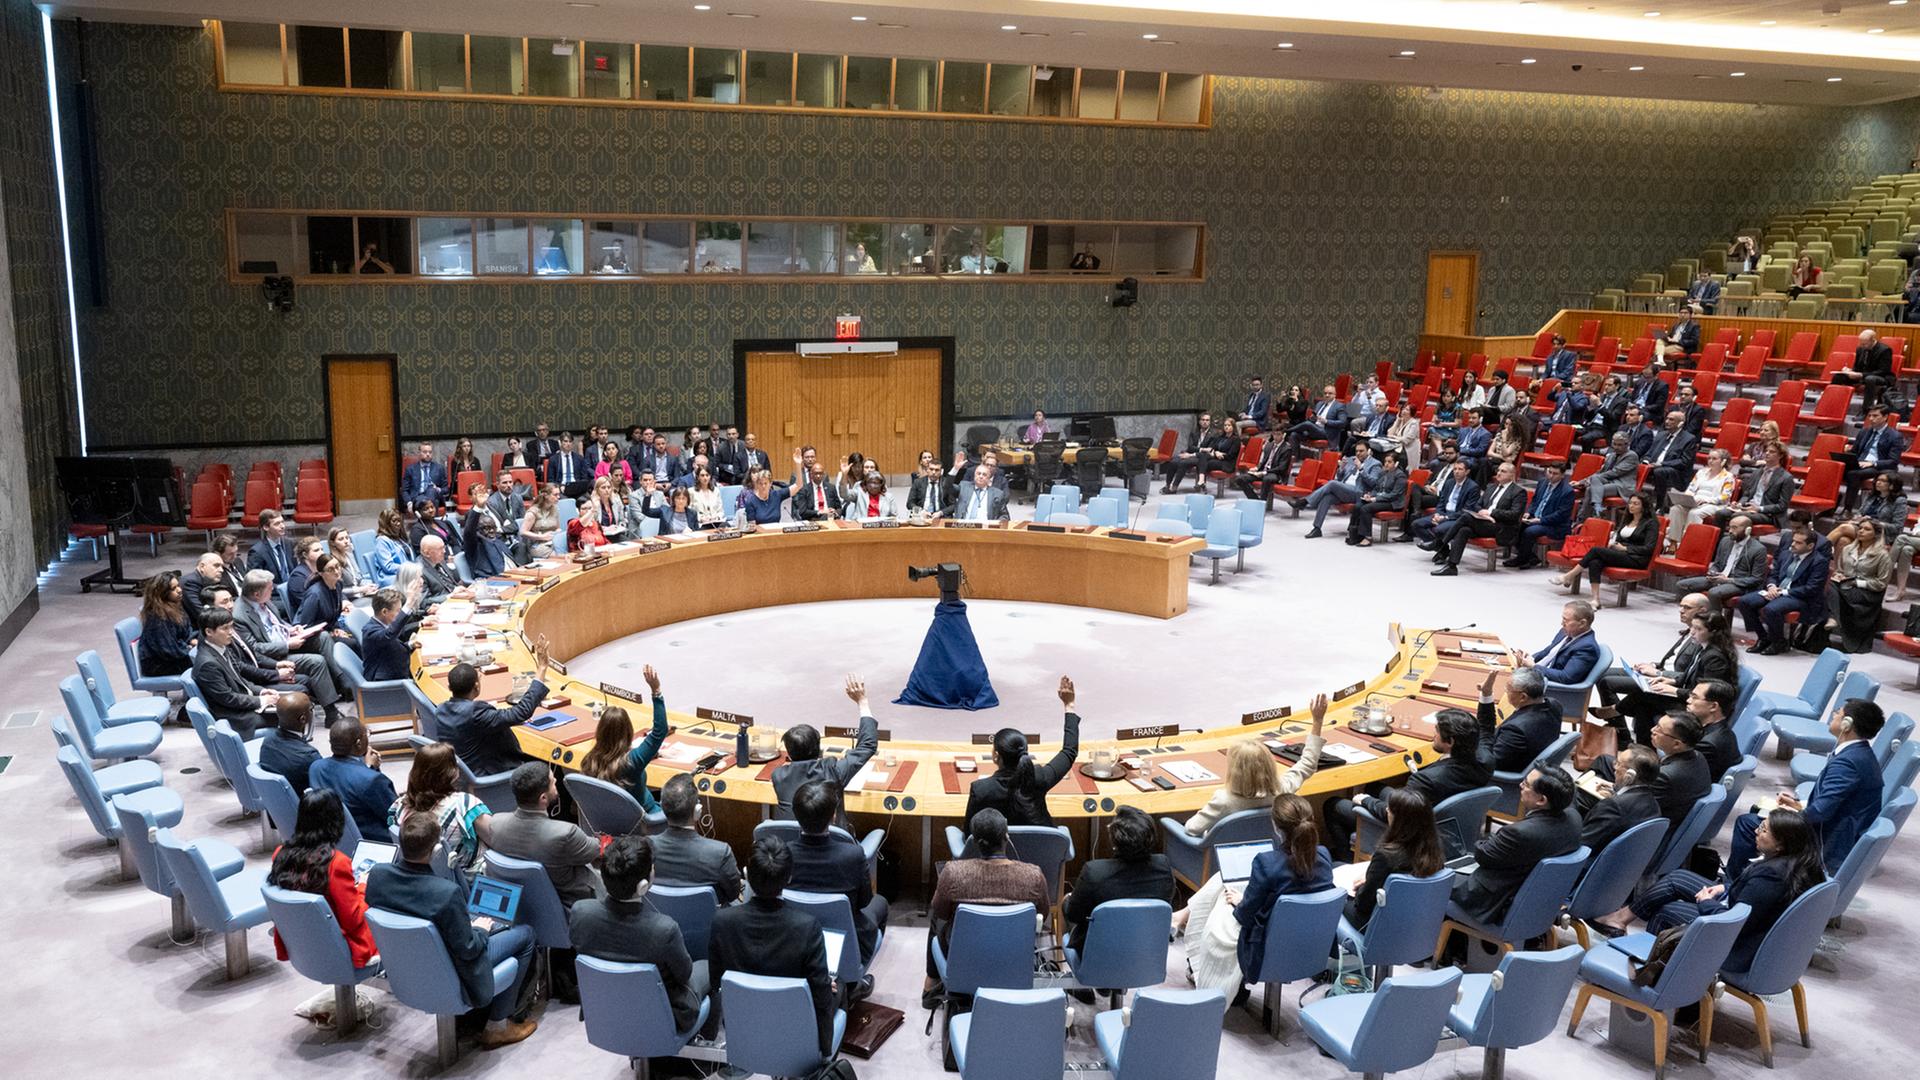 Während einer Sitzung des UN-Sicherheitsrates im UN-Hauptquartier in New York stimmen die Vertreter über einen Resolutionsentwurf ab. Der UN-Sicherheitsrat hat sich für einen von US-Präsident Biden vorgestellten mehrstufigen Plan für eine Waffenruhe im Gaza-Krieg ausgesprochen.